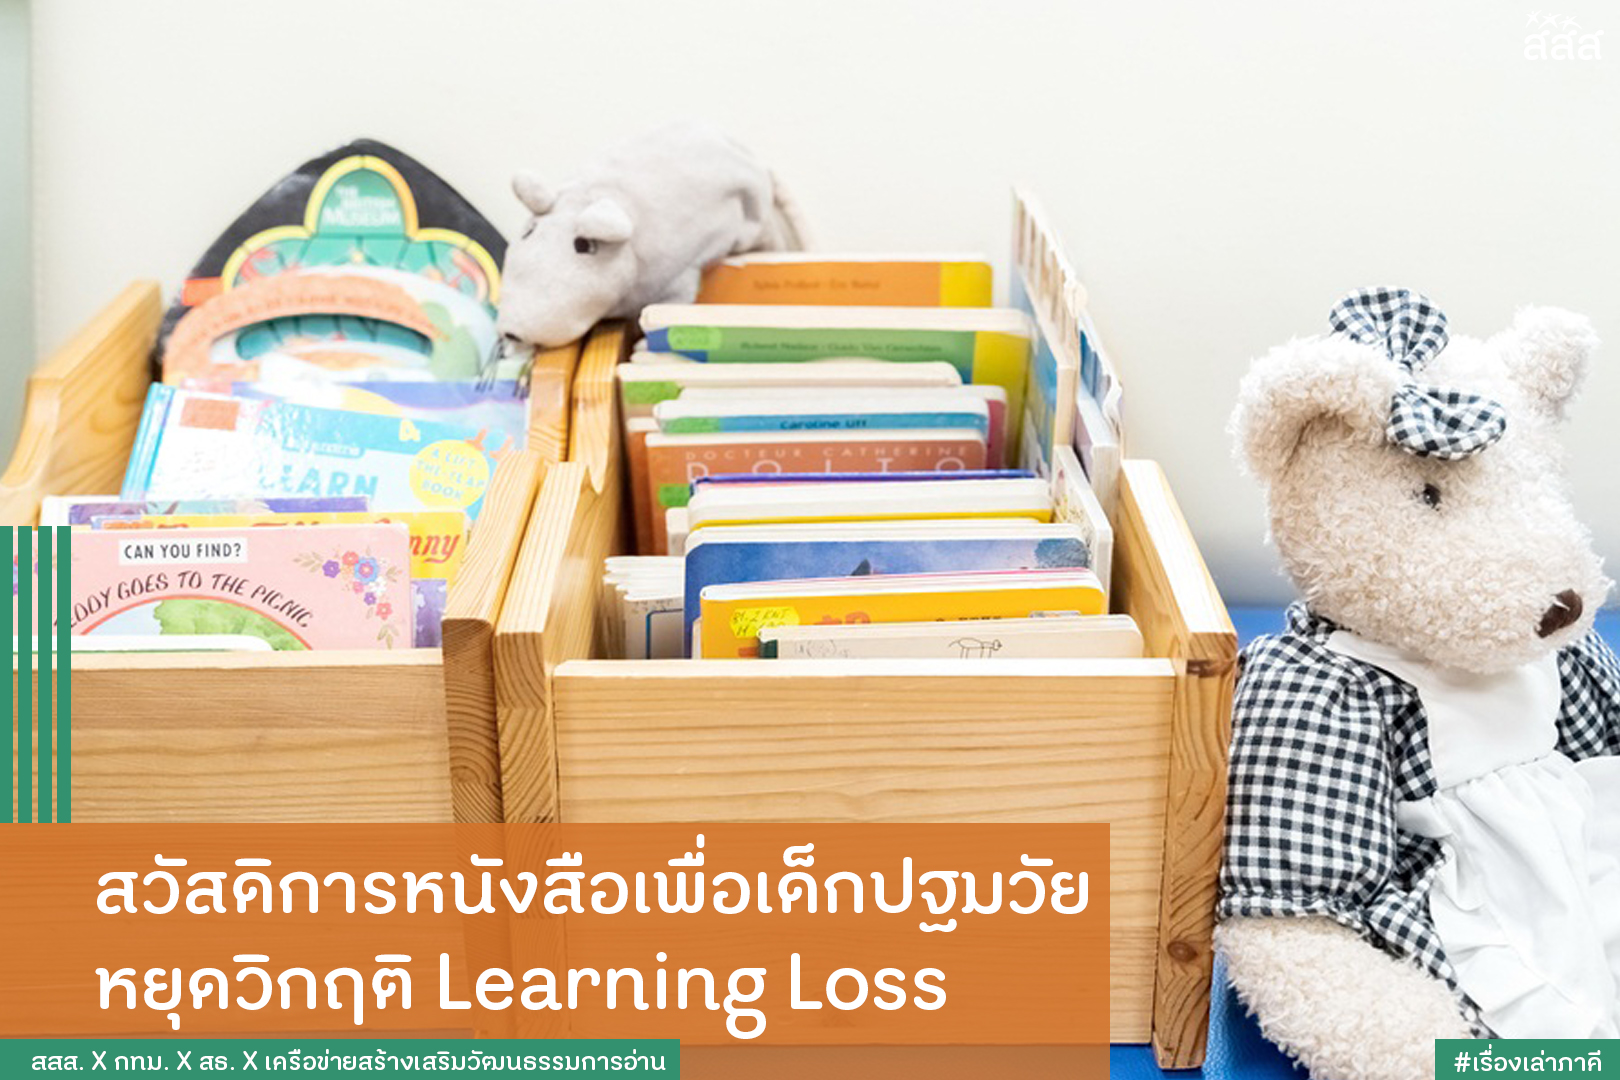 สวัสดิการหนังสือเพื่อเด็กปฐมวัย หยุดวิกฤติ Learning Loss thaihealth